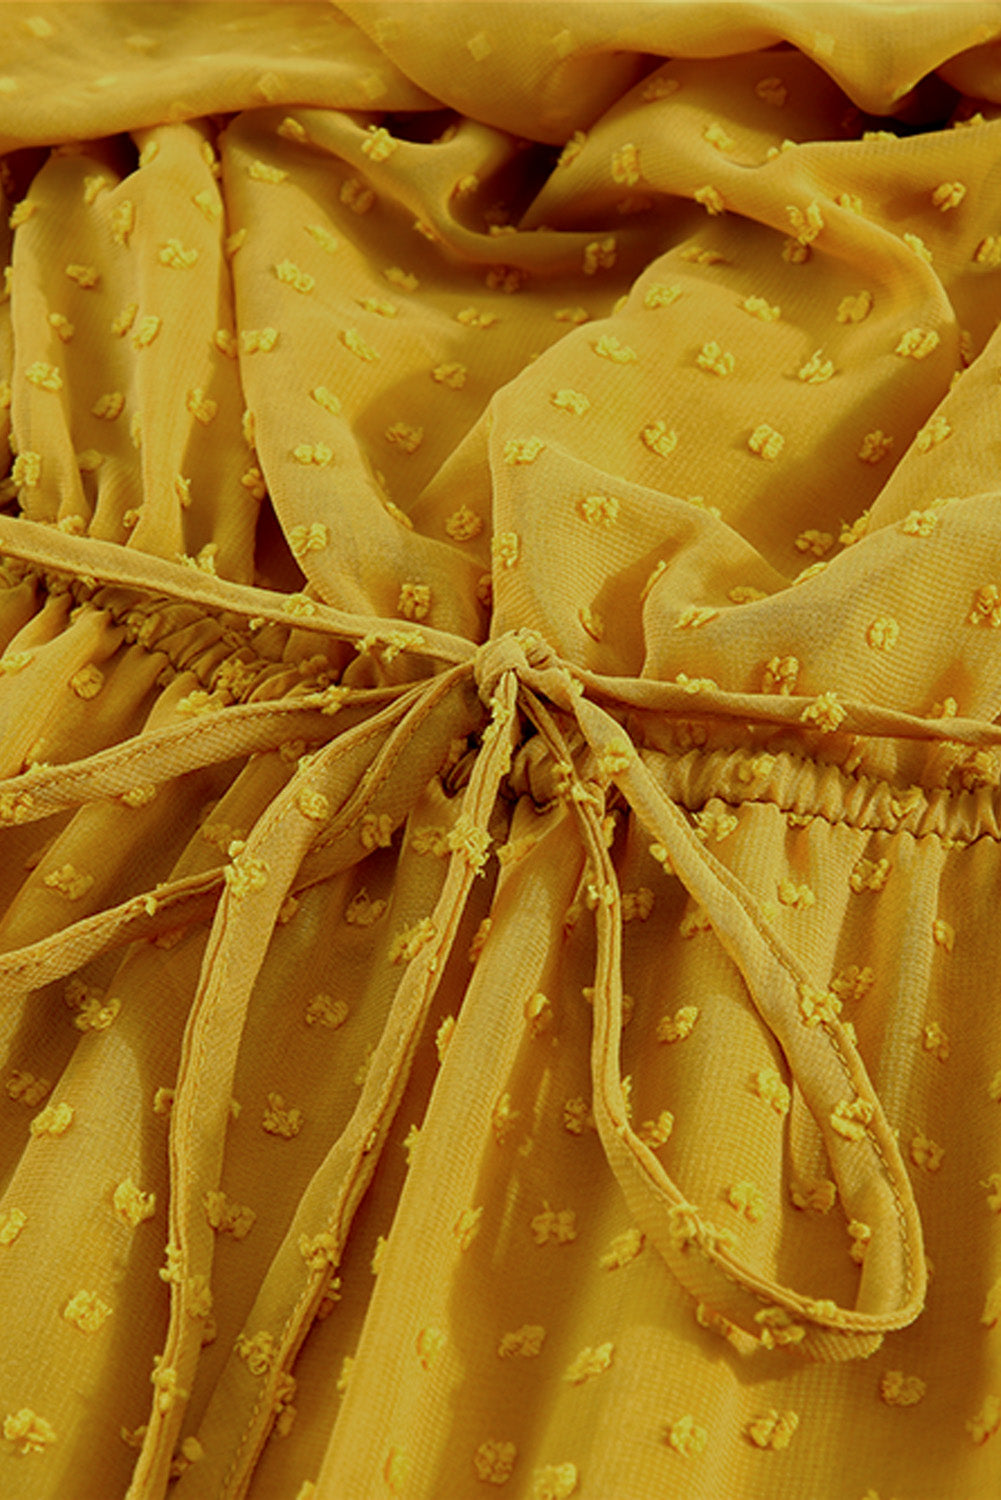 Jaune - Robe longue jaune jaune à volants et épaules dénudées à pois suisses